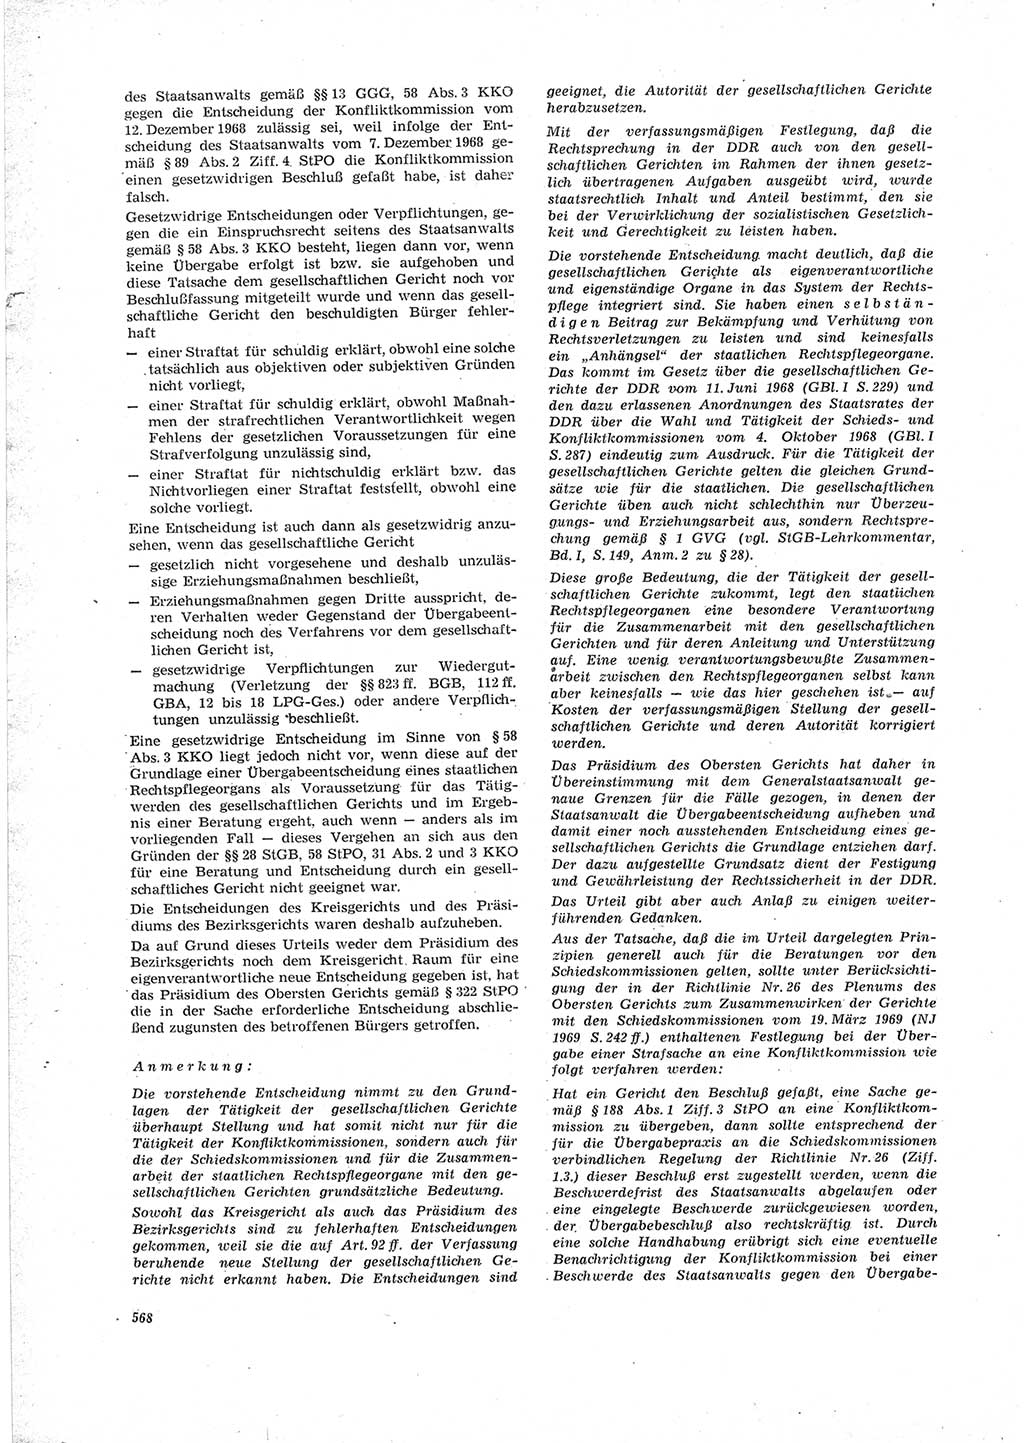 Neue Justiz (NJ), Zeitschrift für Recht und Rechtswissenschaft [Deutsche Demokratische Republik (DDR)], 23. Jahrgang 1969, Seite 568 (NJ DDR 1969, S. 568)